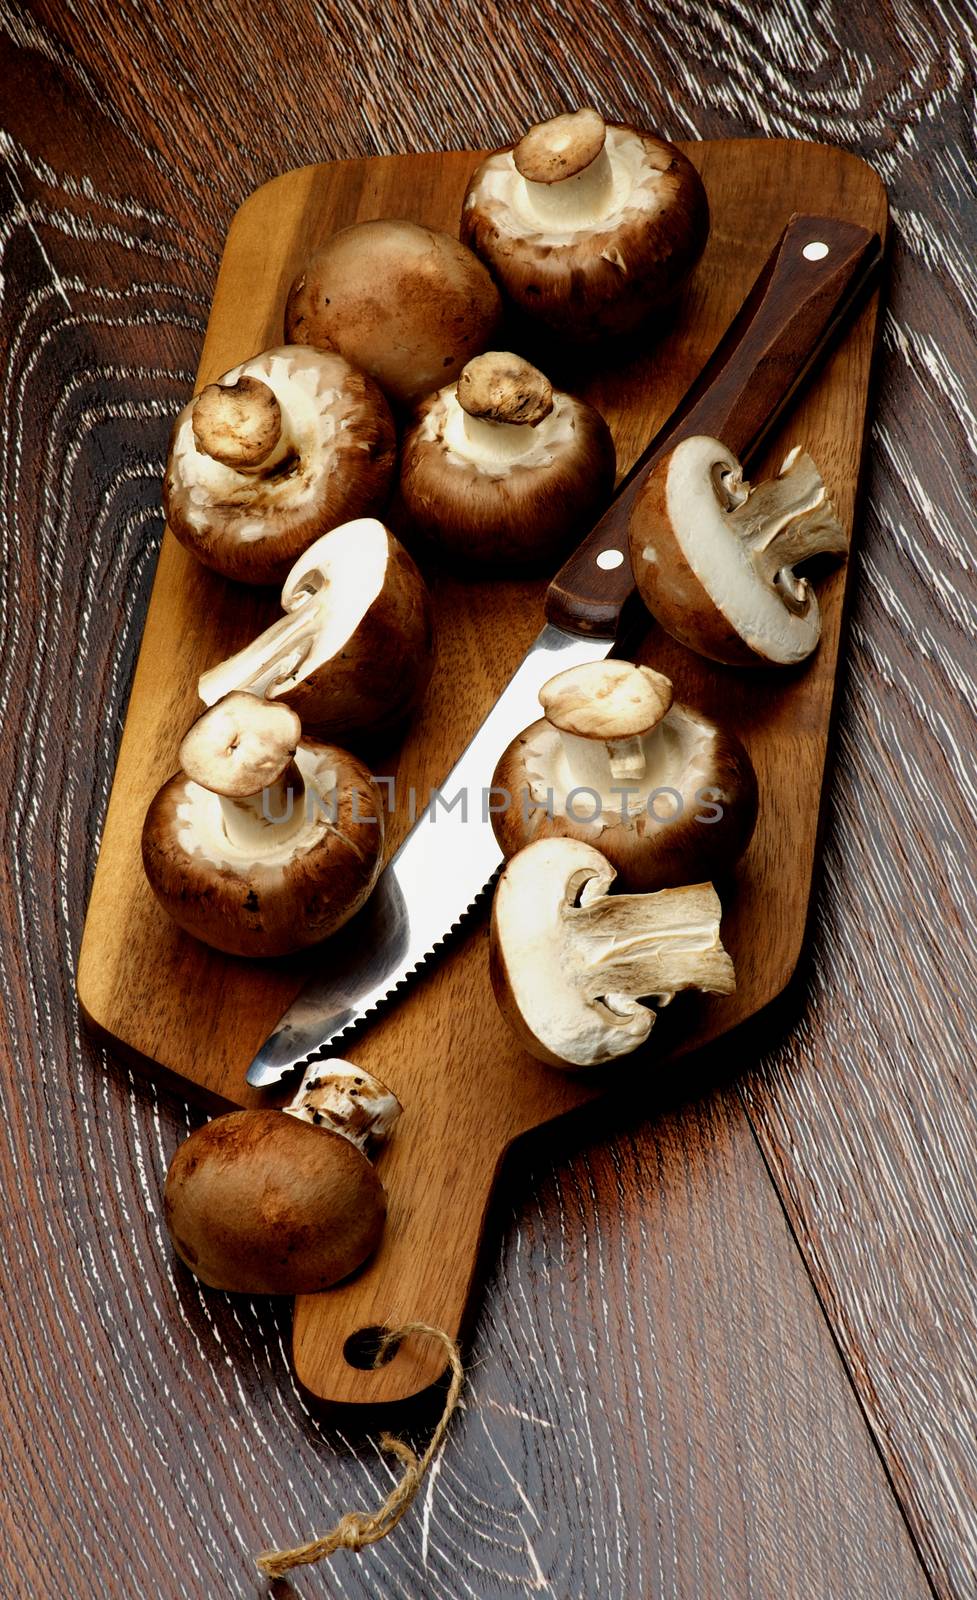 Portabello Mushroom by zhekos